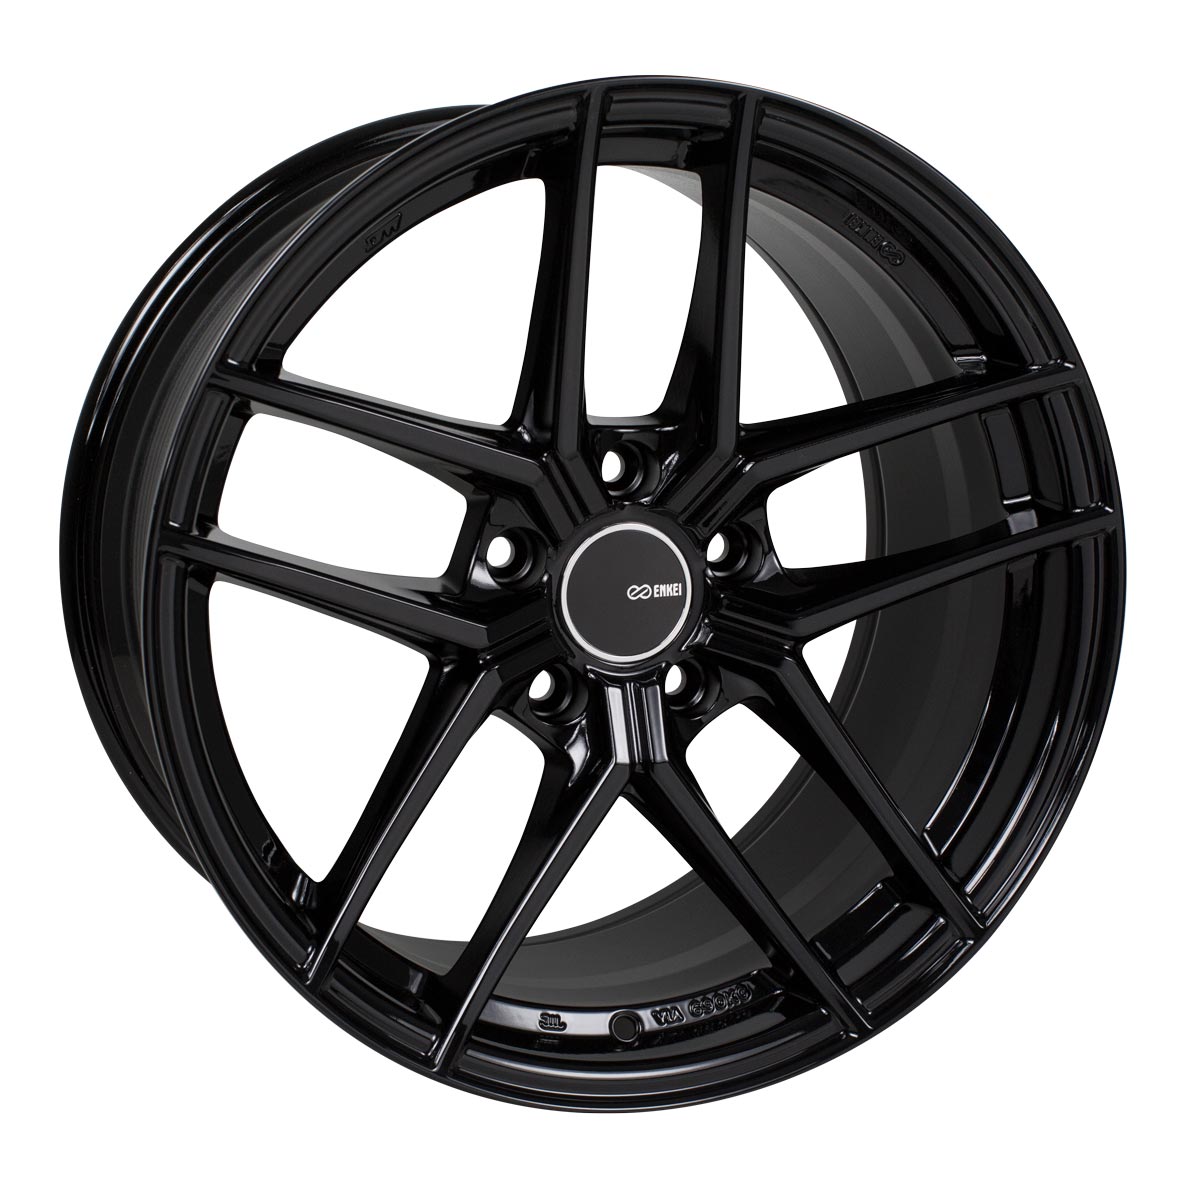 Enkei TY-5 Wheel Gloss Black 18x8.5 +25 5x114.3 498-885-6525BK